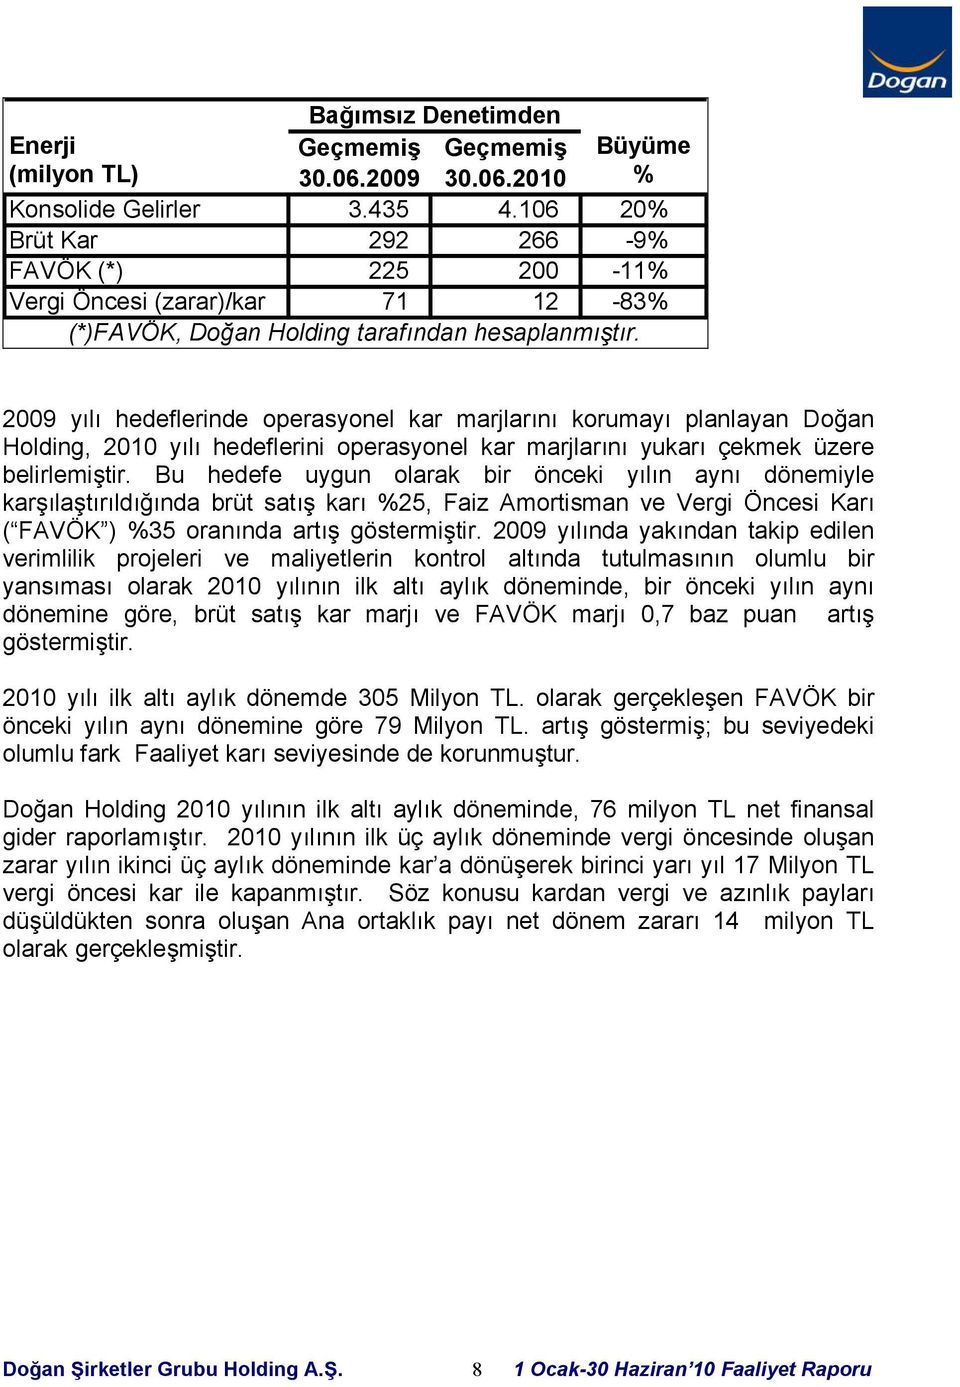 2009 yılı hedeflerinde operasyonel kar marjlarını korumayı planlayan Doğan Holding, 2010 yılı hedeflerini operasyonel kar marjlarını yukarı çekmek üzere belirlemiştir.